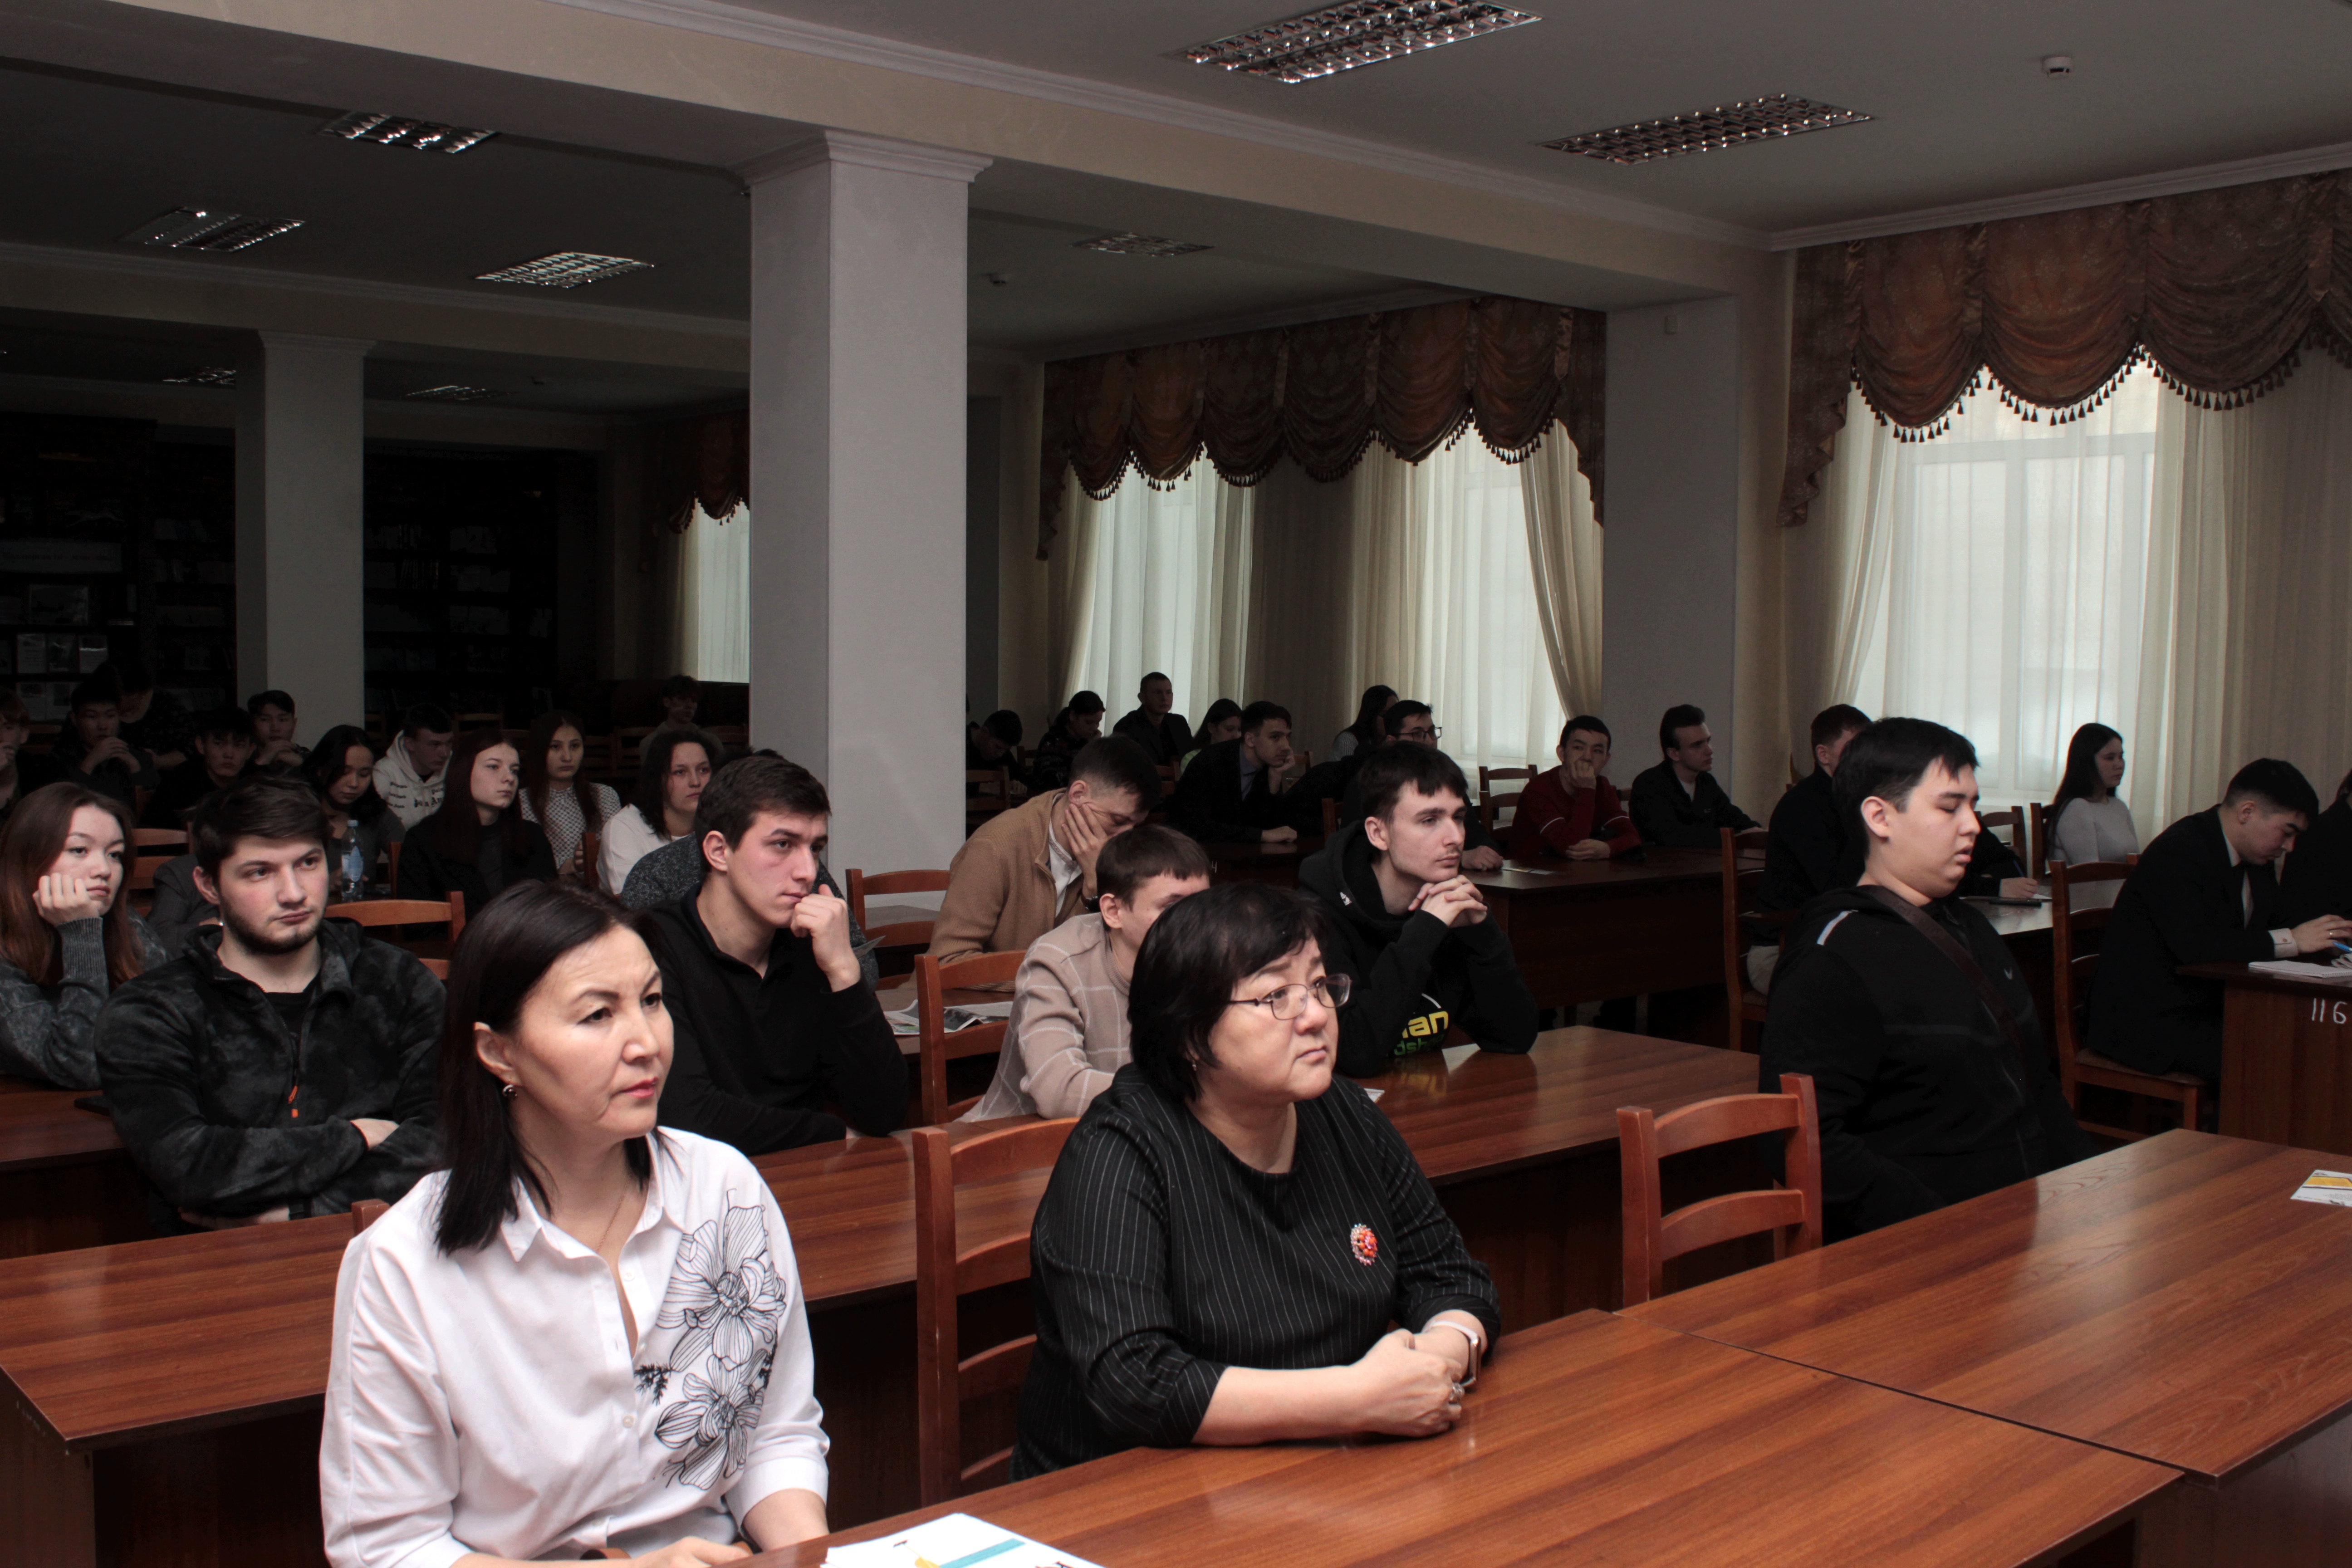 LIFELONG LEARNING – NEW OPPORTUNITIES FOR KAZAKHSTANIS